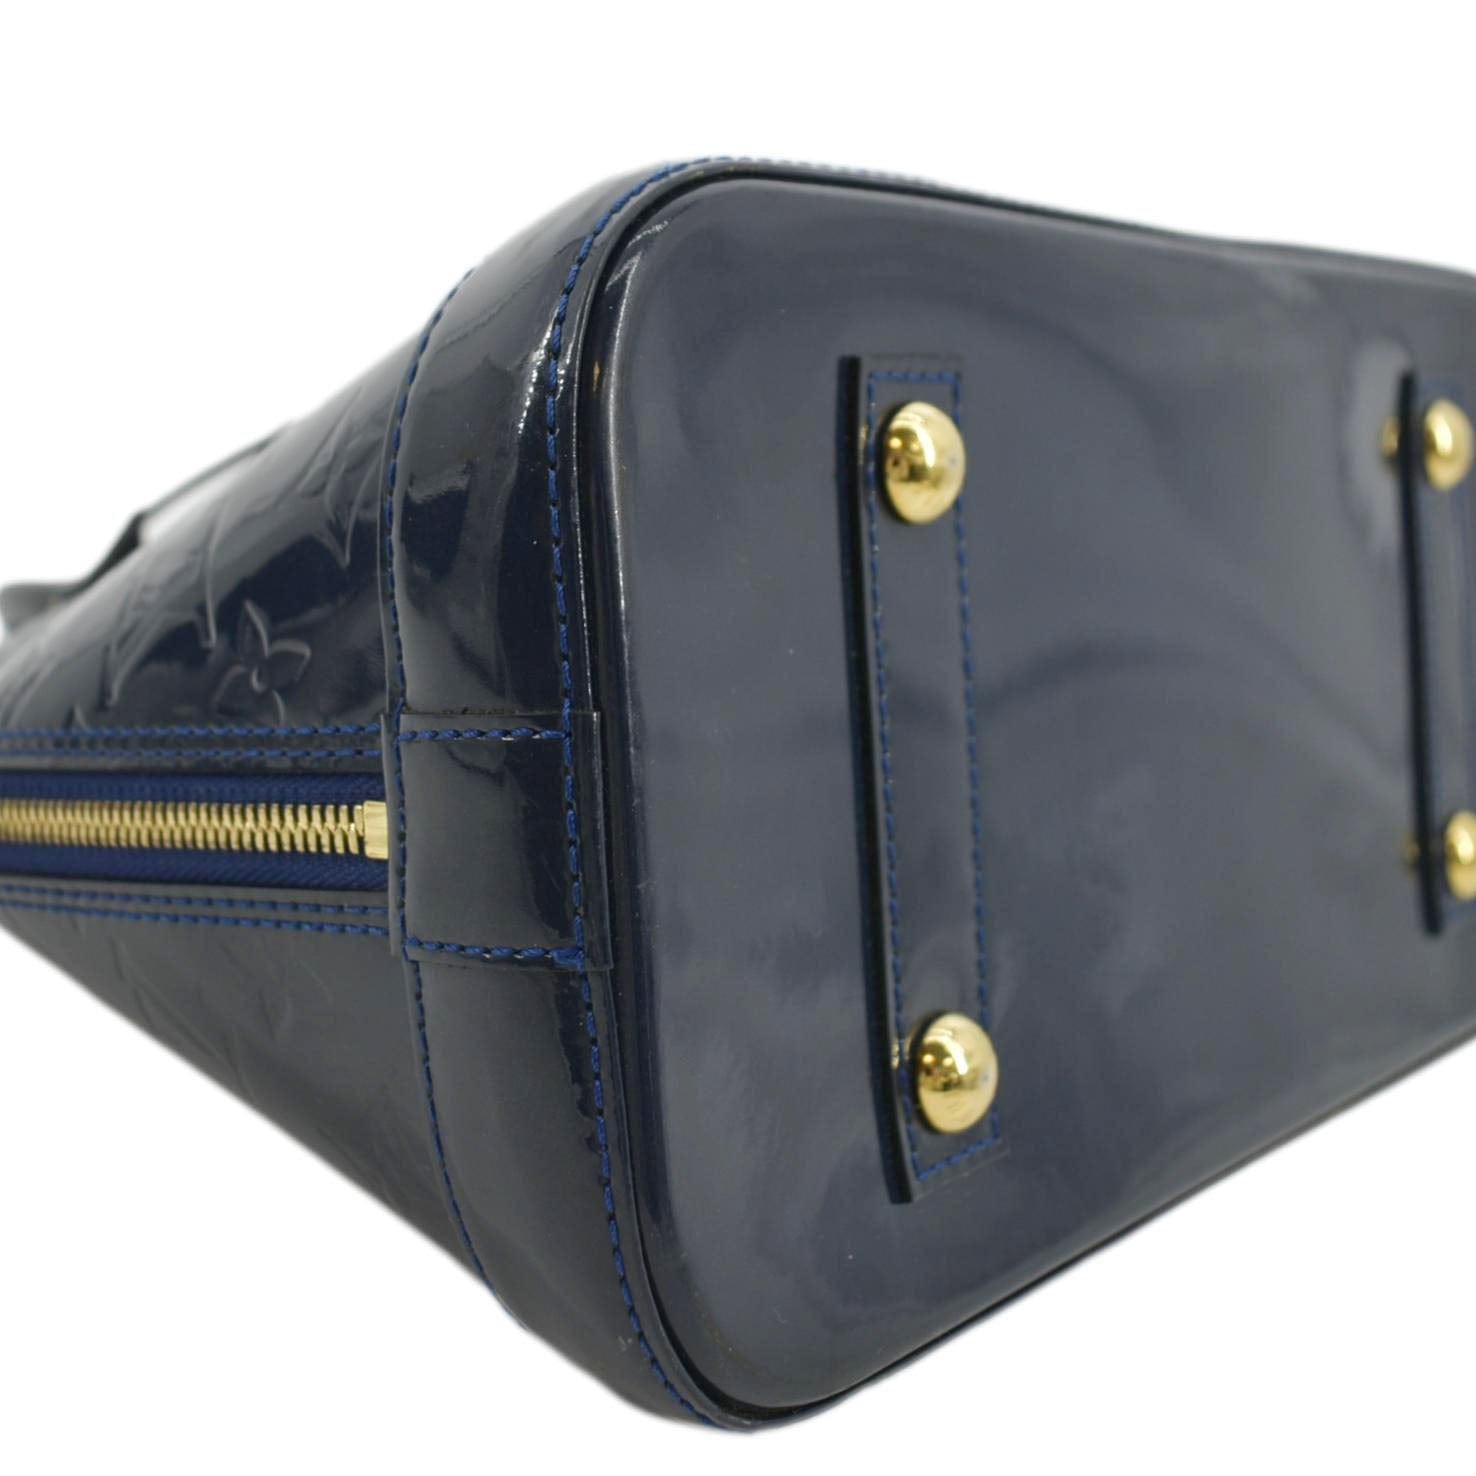 Louis Vuitton Bleu Nuit Monogram Vernis Leather Alma PM Bag Louis